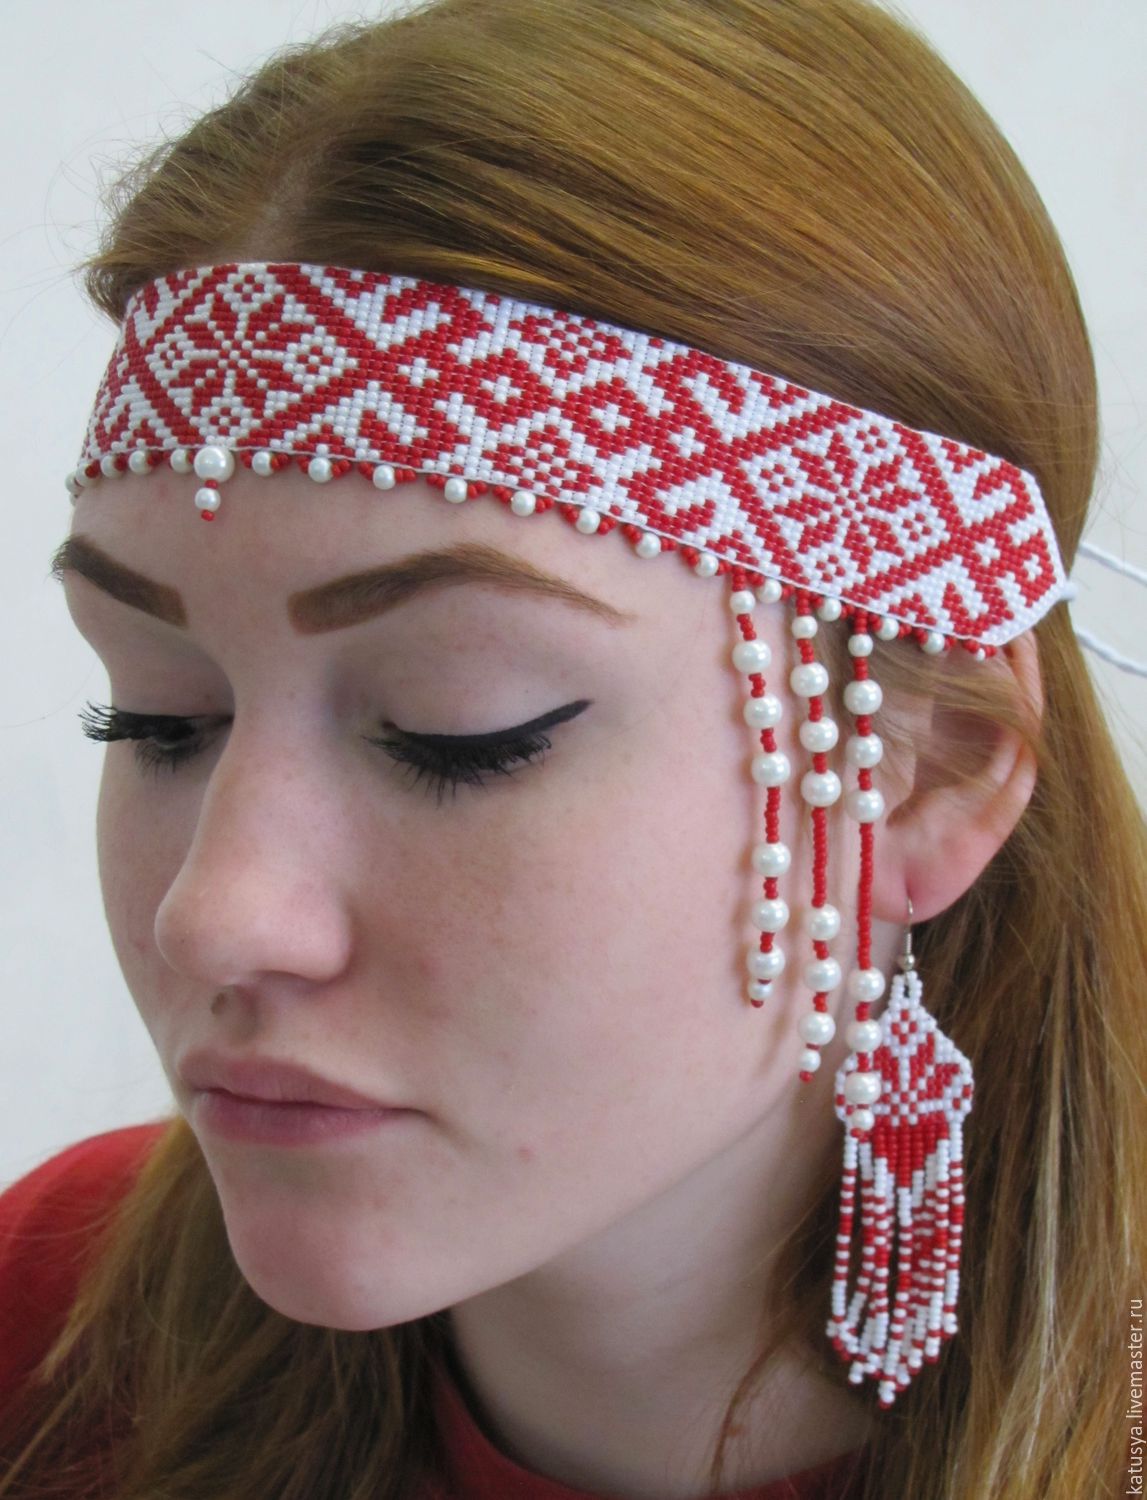 Ладояра - славянские пояса, очелья, браслеты